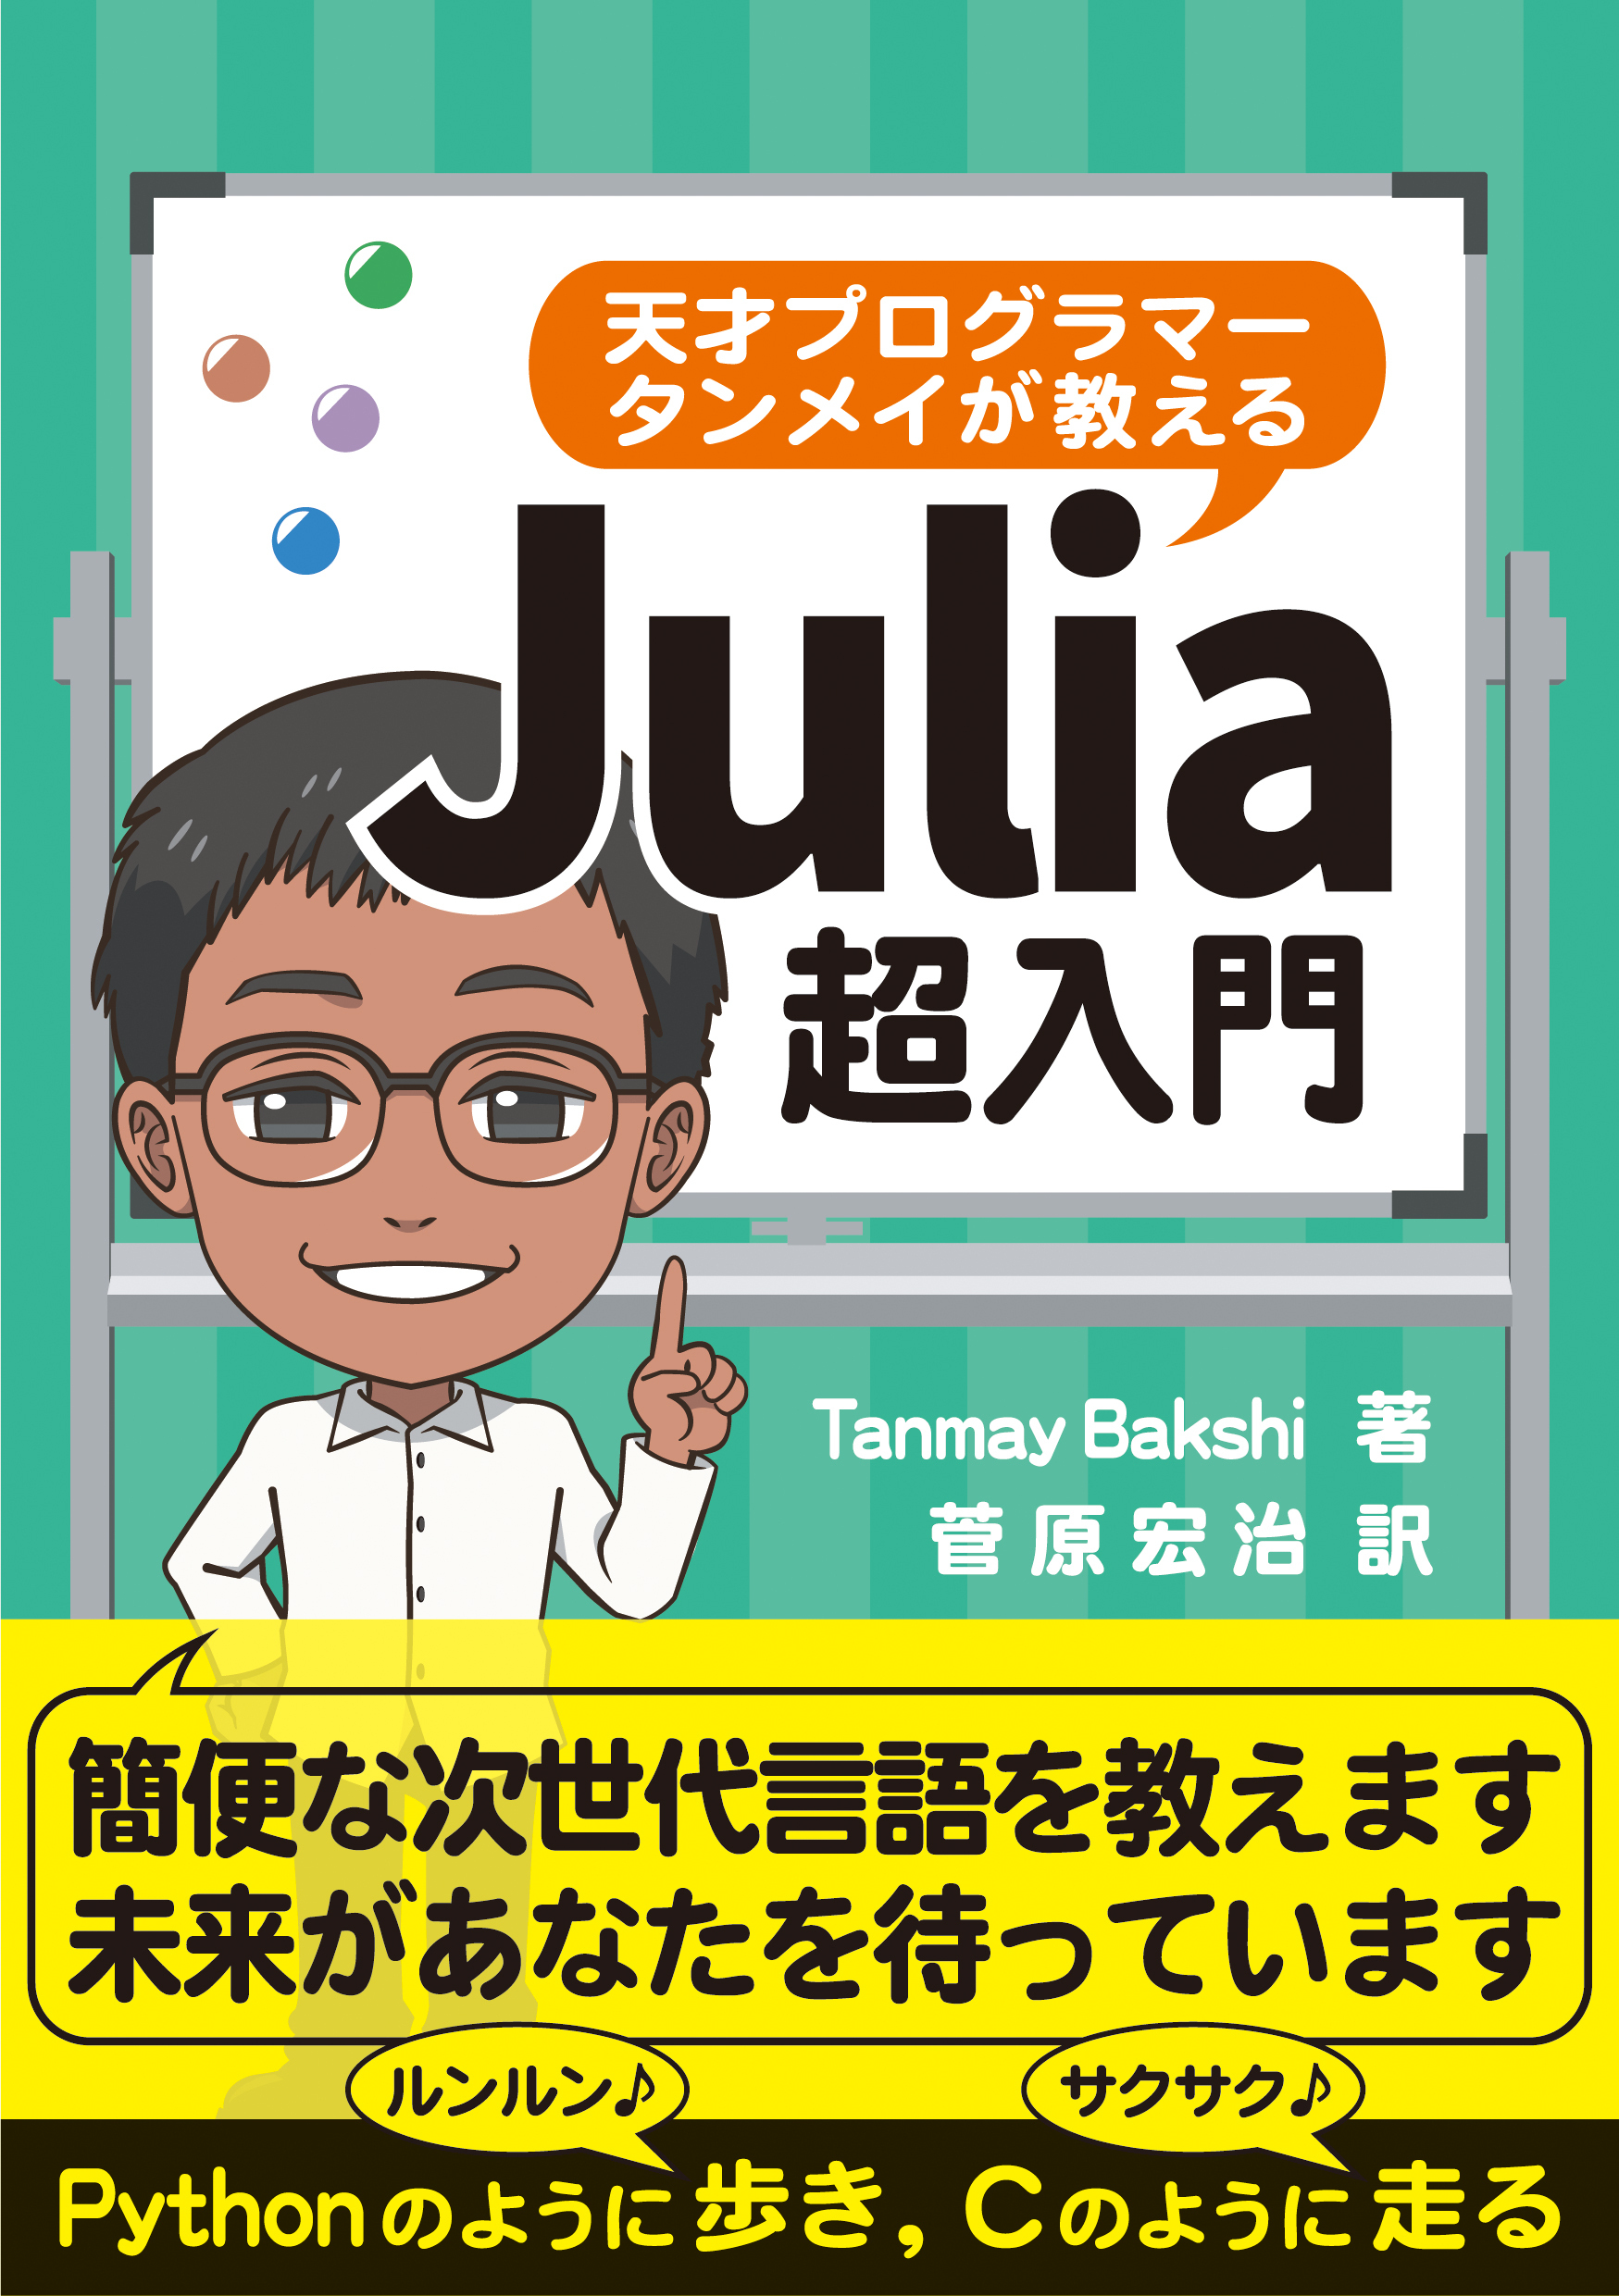 天才プログラマー タンメイが教えるJulia超入門の商品画像